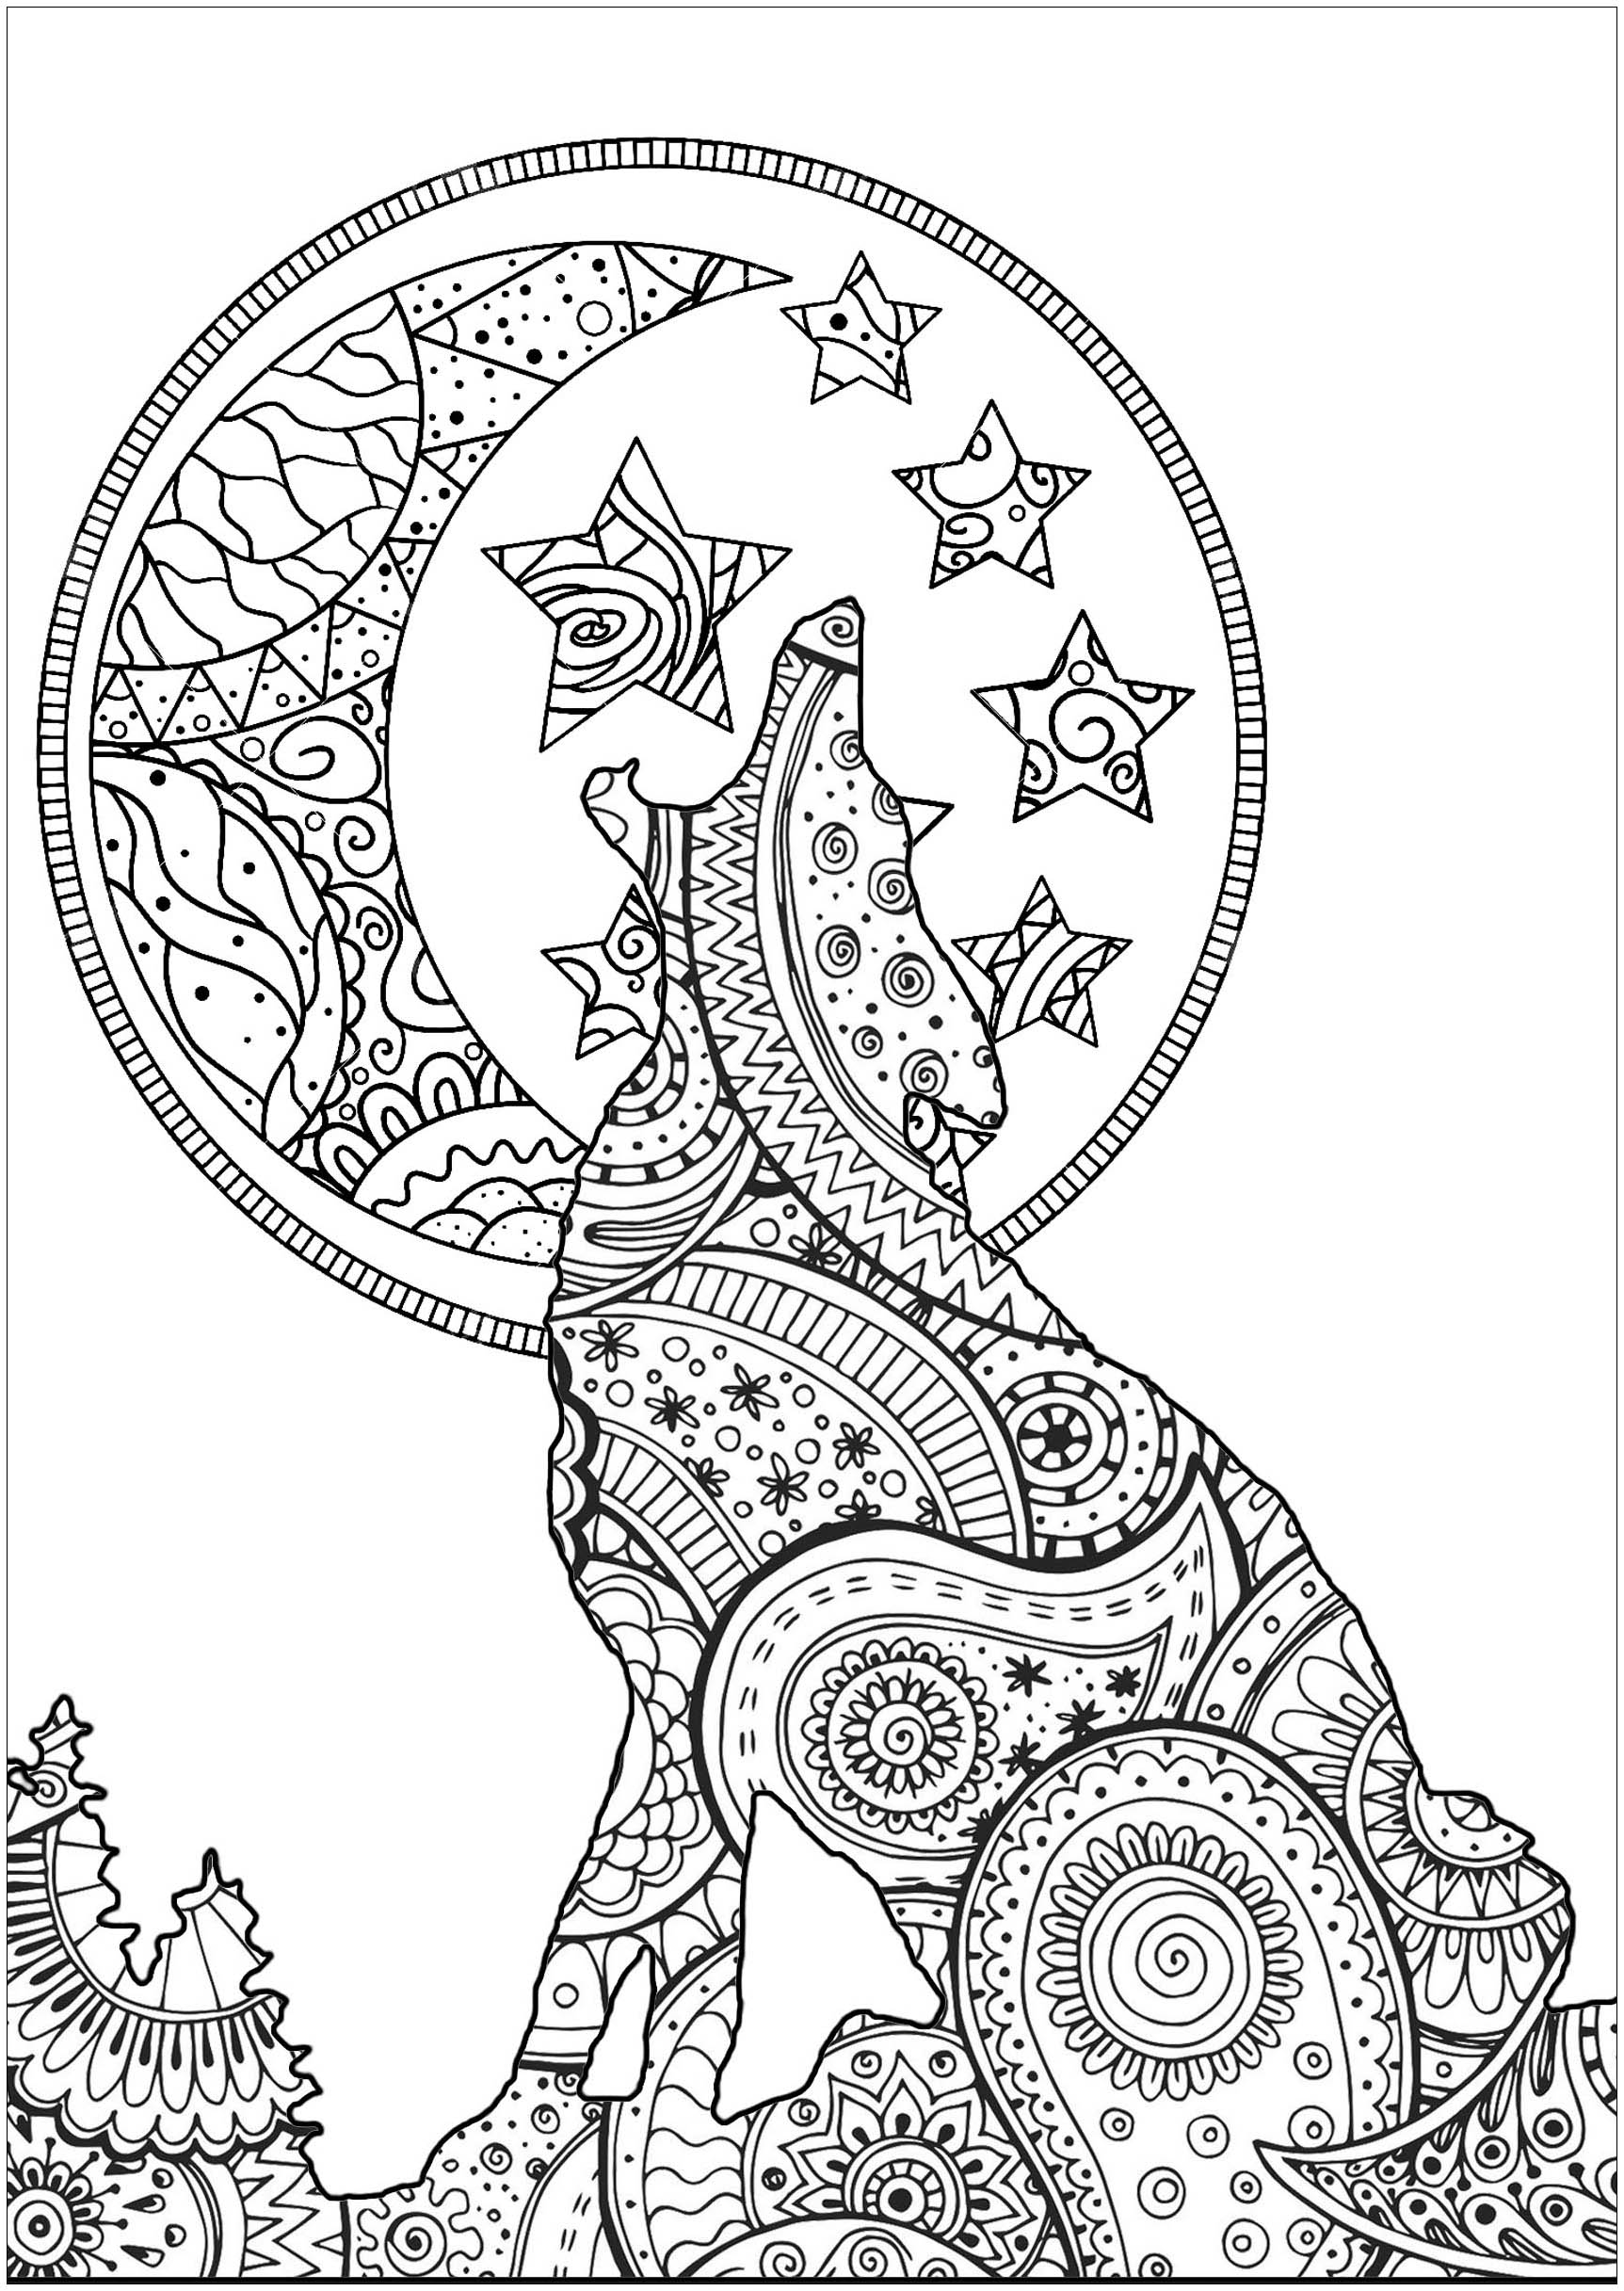 Bonita silueta de lobo a la luz de la luna, con patrones que mezclan formas de Zentangle y Paisley, Artista : Art'Isabelle